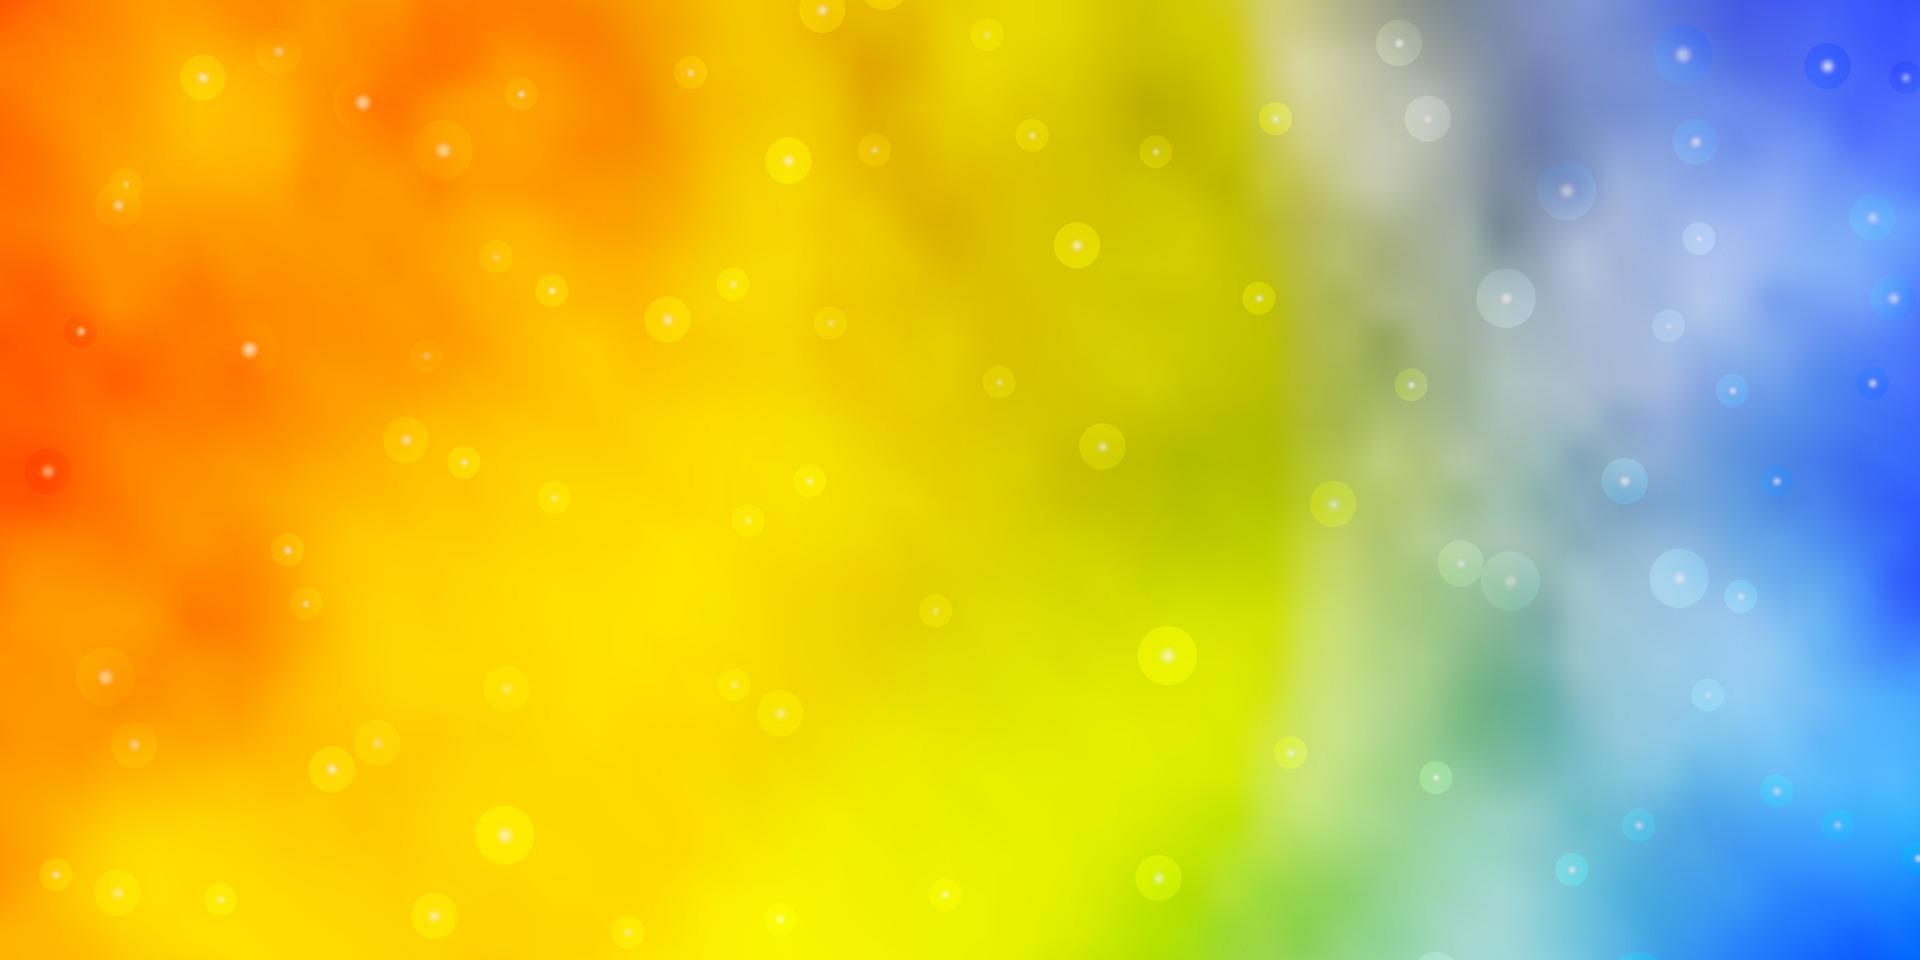 ljusblå, gul vektorbakgrund med små och stora stjärnor. vektor